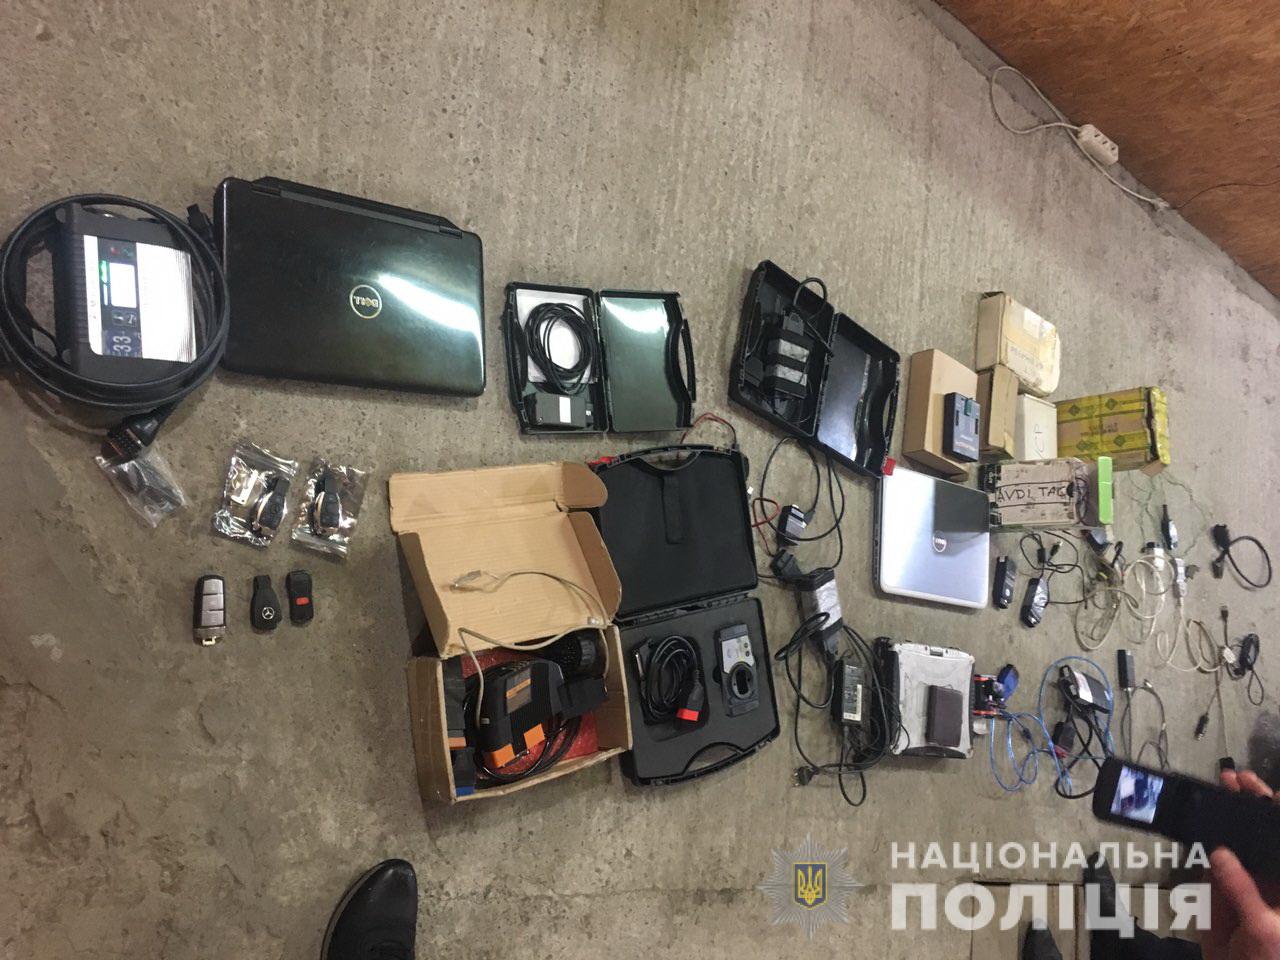 Із оселі мешканця Мукачева під час обшуку вилучили техніку, що могла використовуватися для викрадення автомобілів (ФОТО)